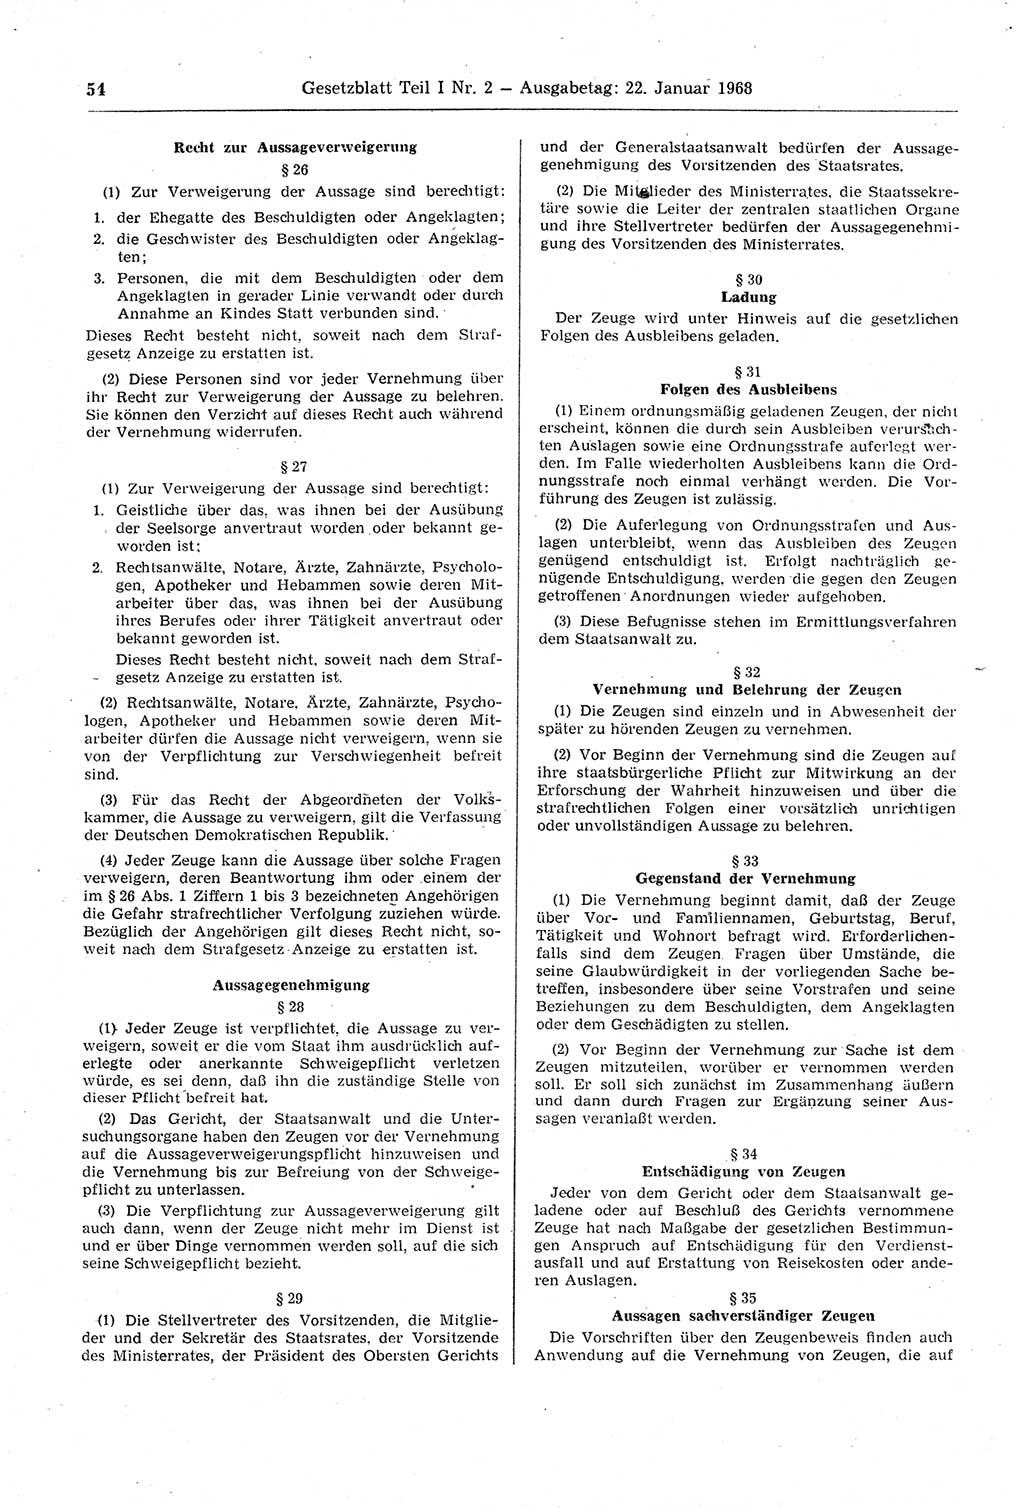 Gesetzblatt (GBl.) der Deutschen Demokratischen Republik (DDR) Teil Ⅰ 1968, Seite 54 (GBl. DDR Ⅰ 1968, S. 54)